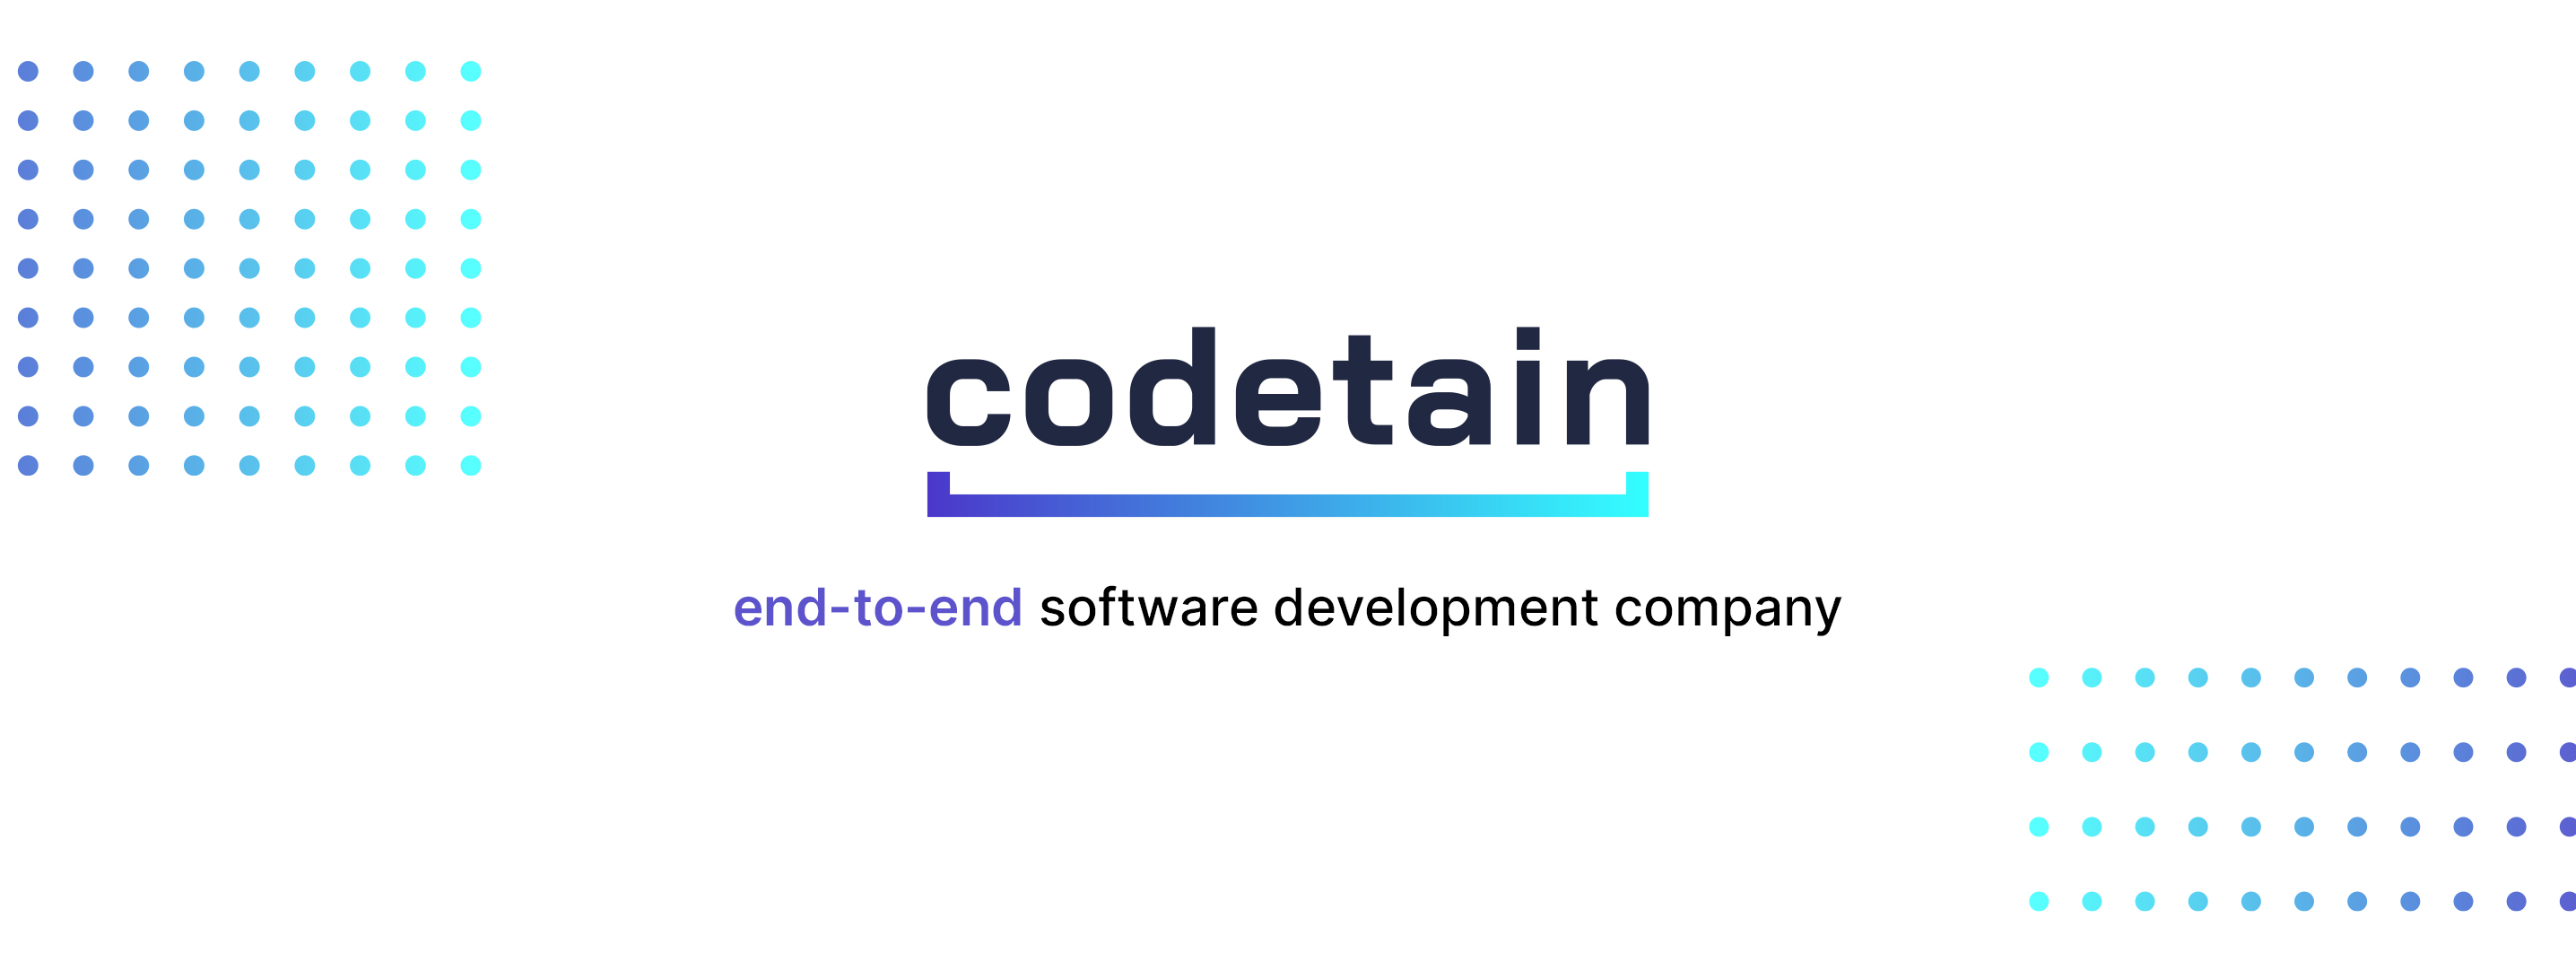 Codetain